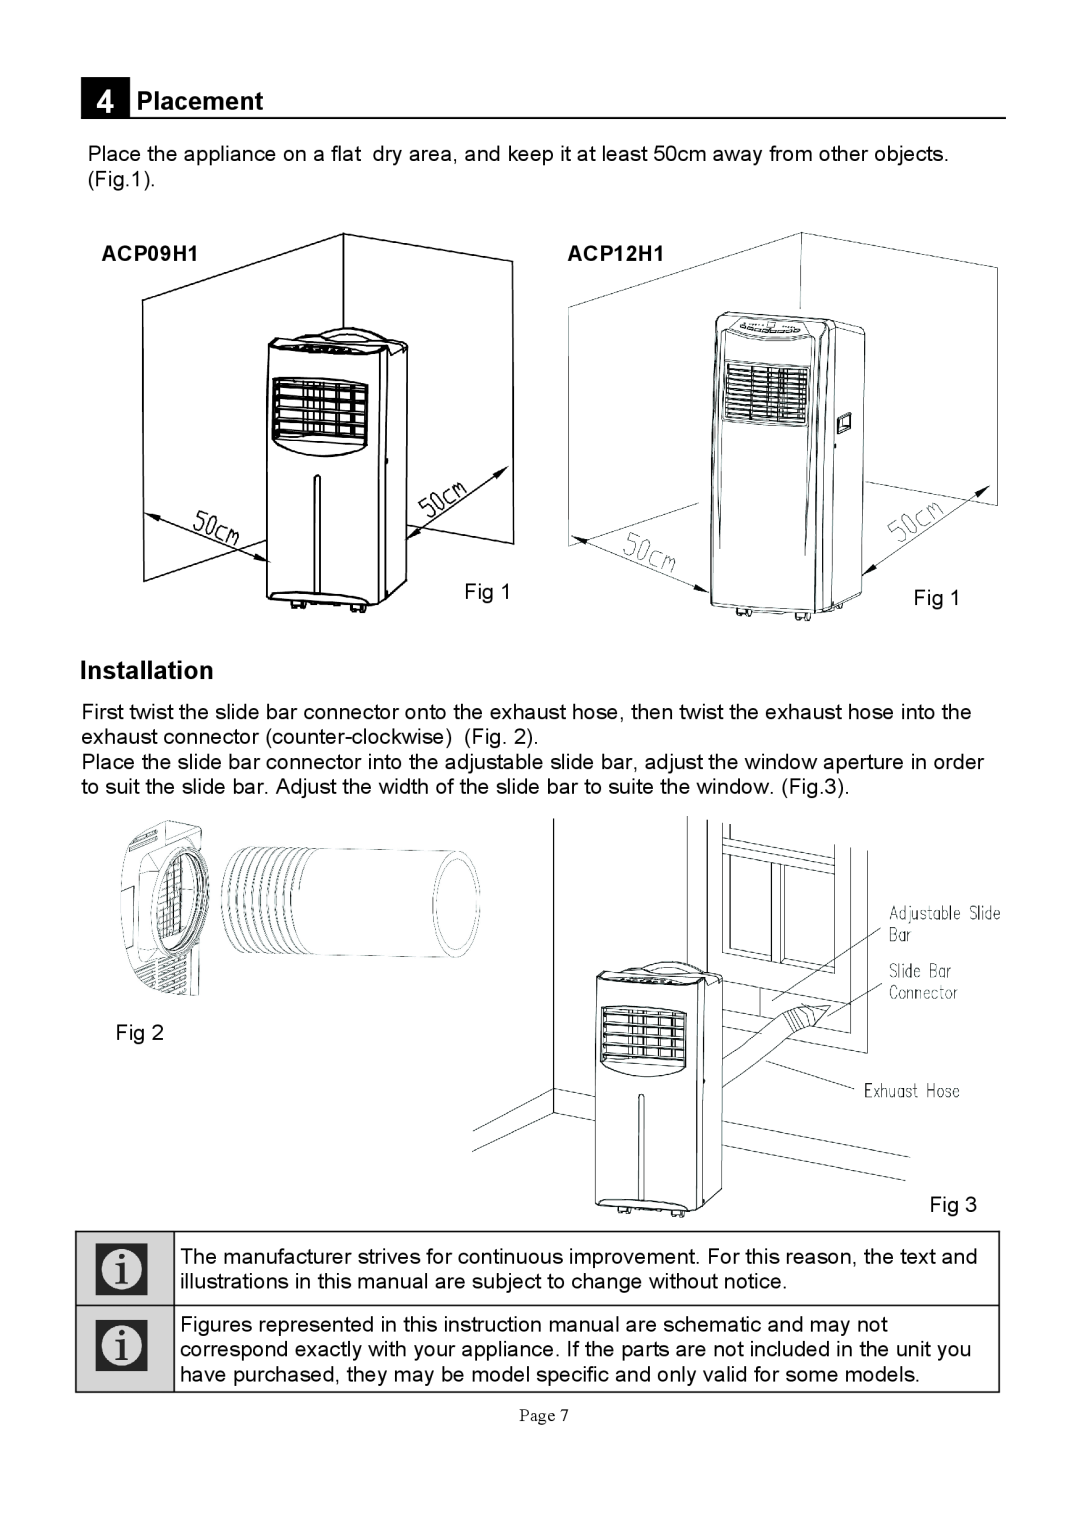 Defy Appliances ACP12H1, ACP09H1 manual 9@0 9#, # #, $0A8 